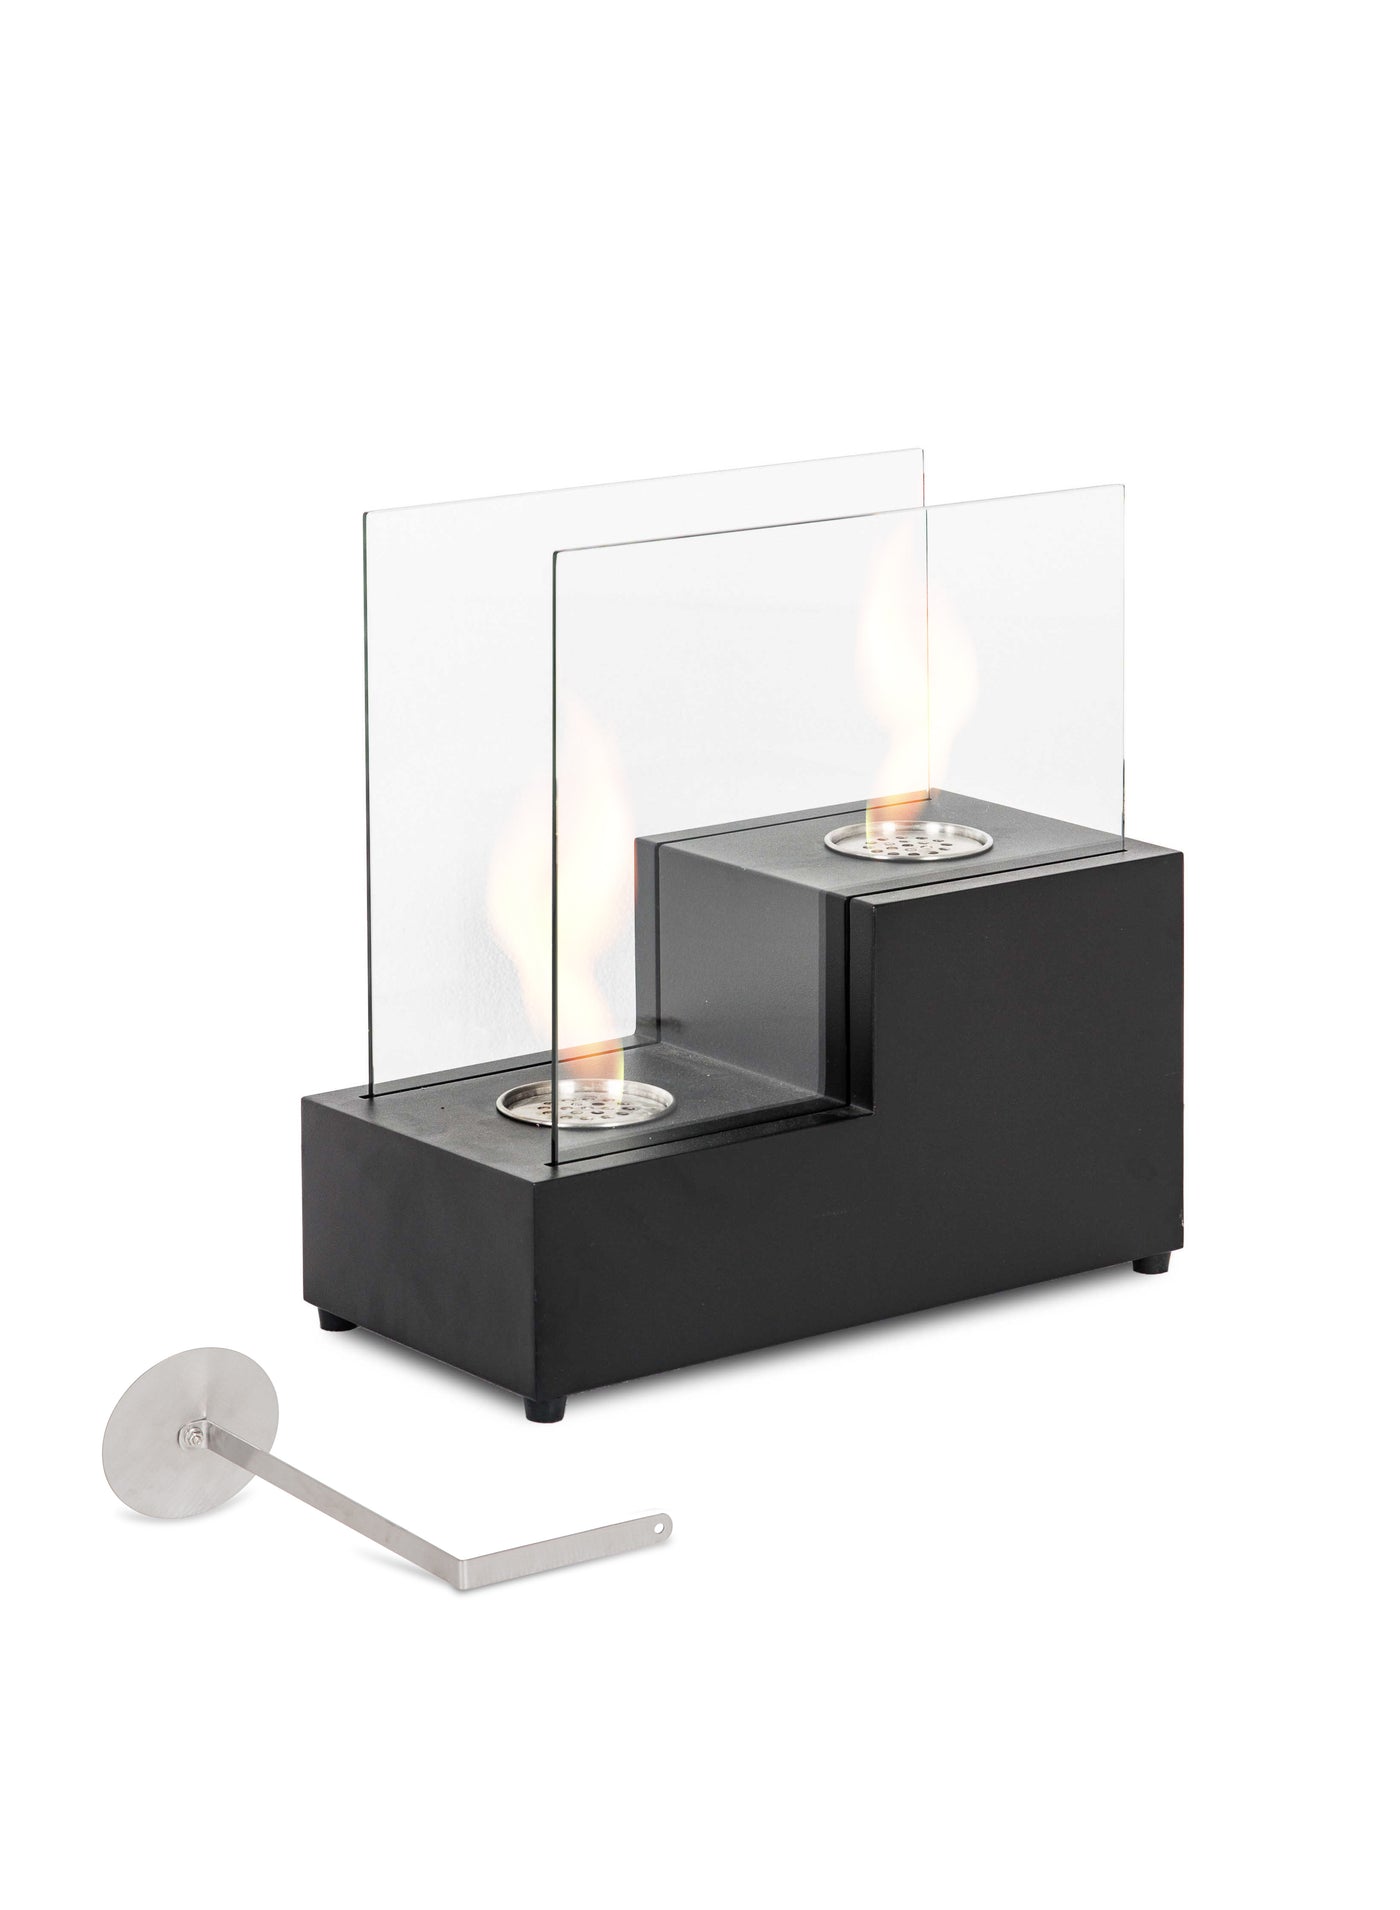 SALAANKA black table bioethanol fireplace